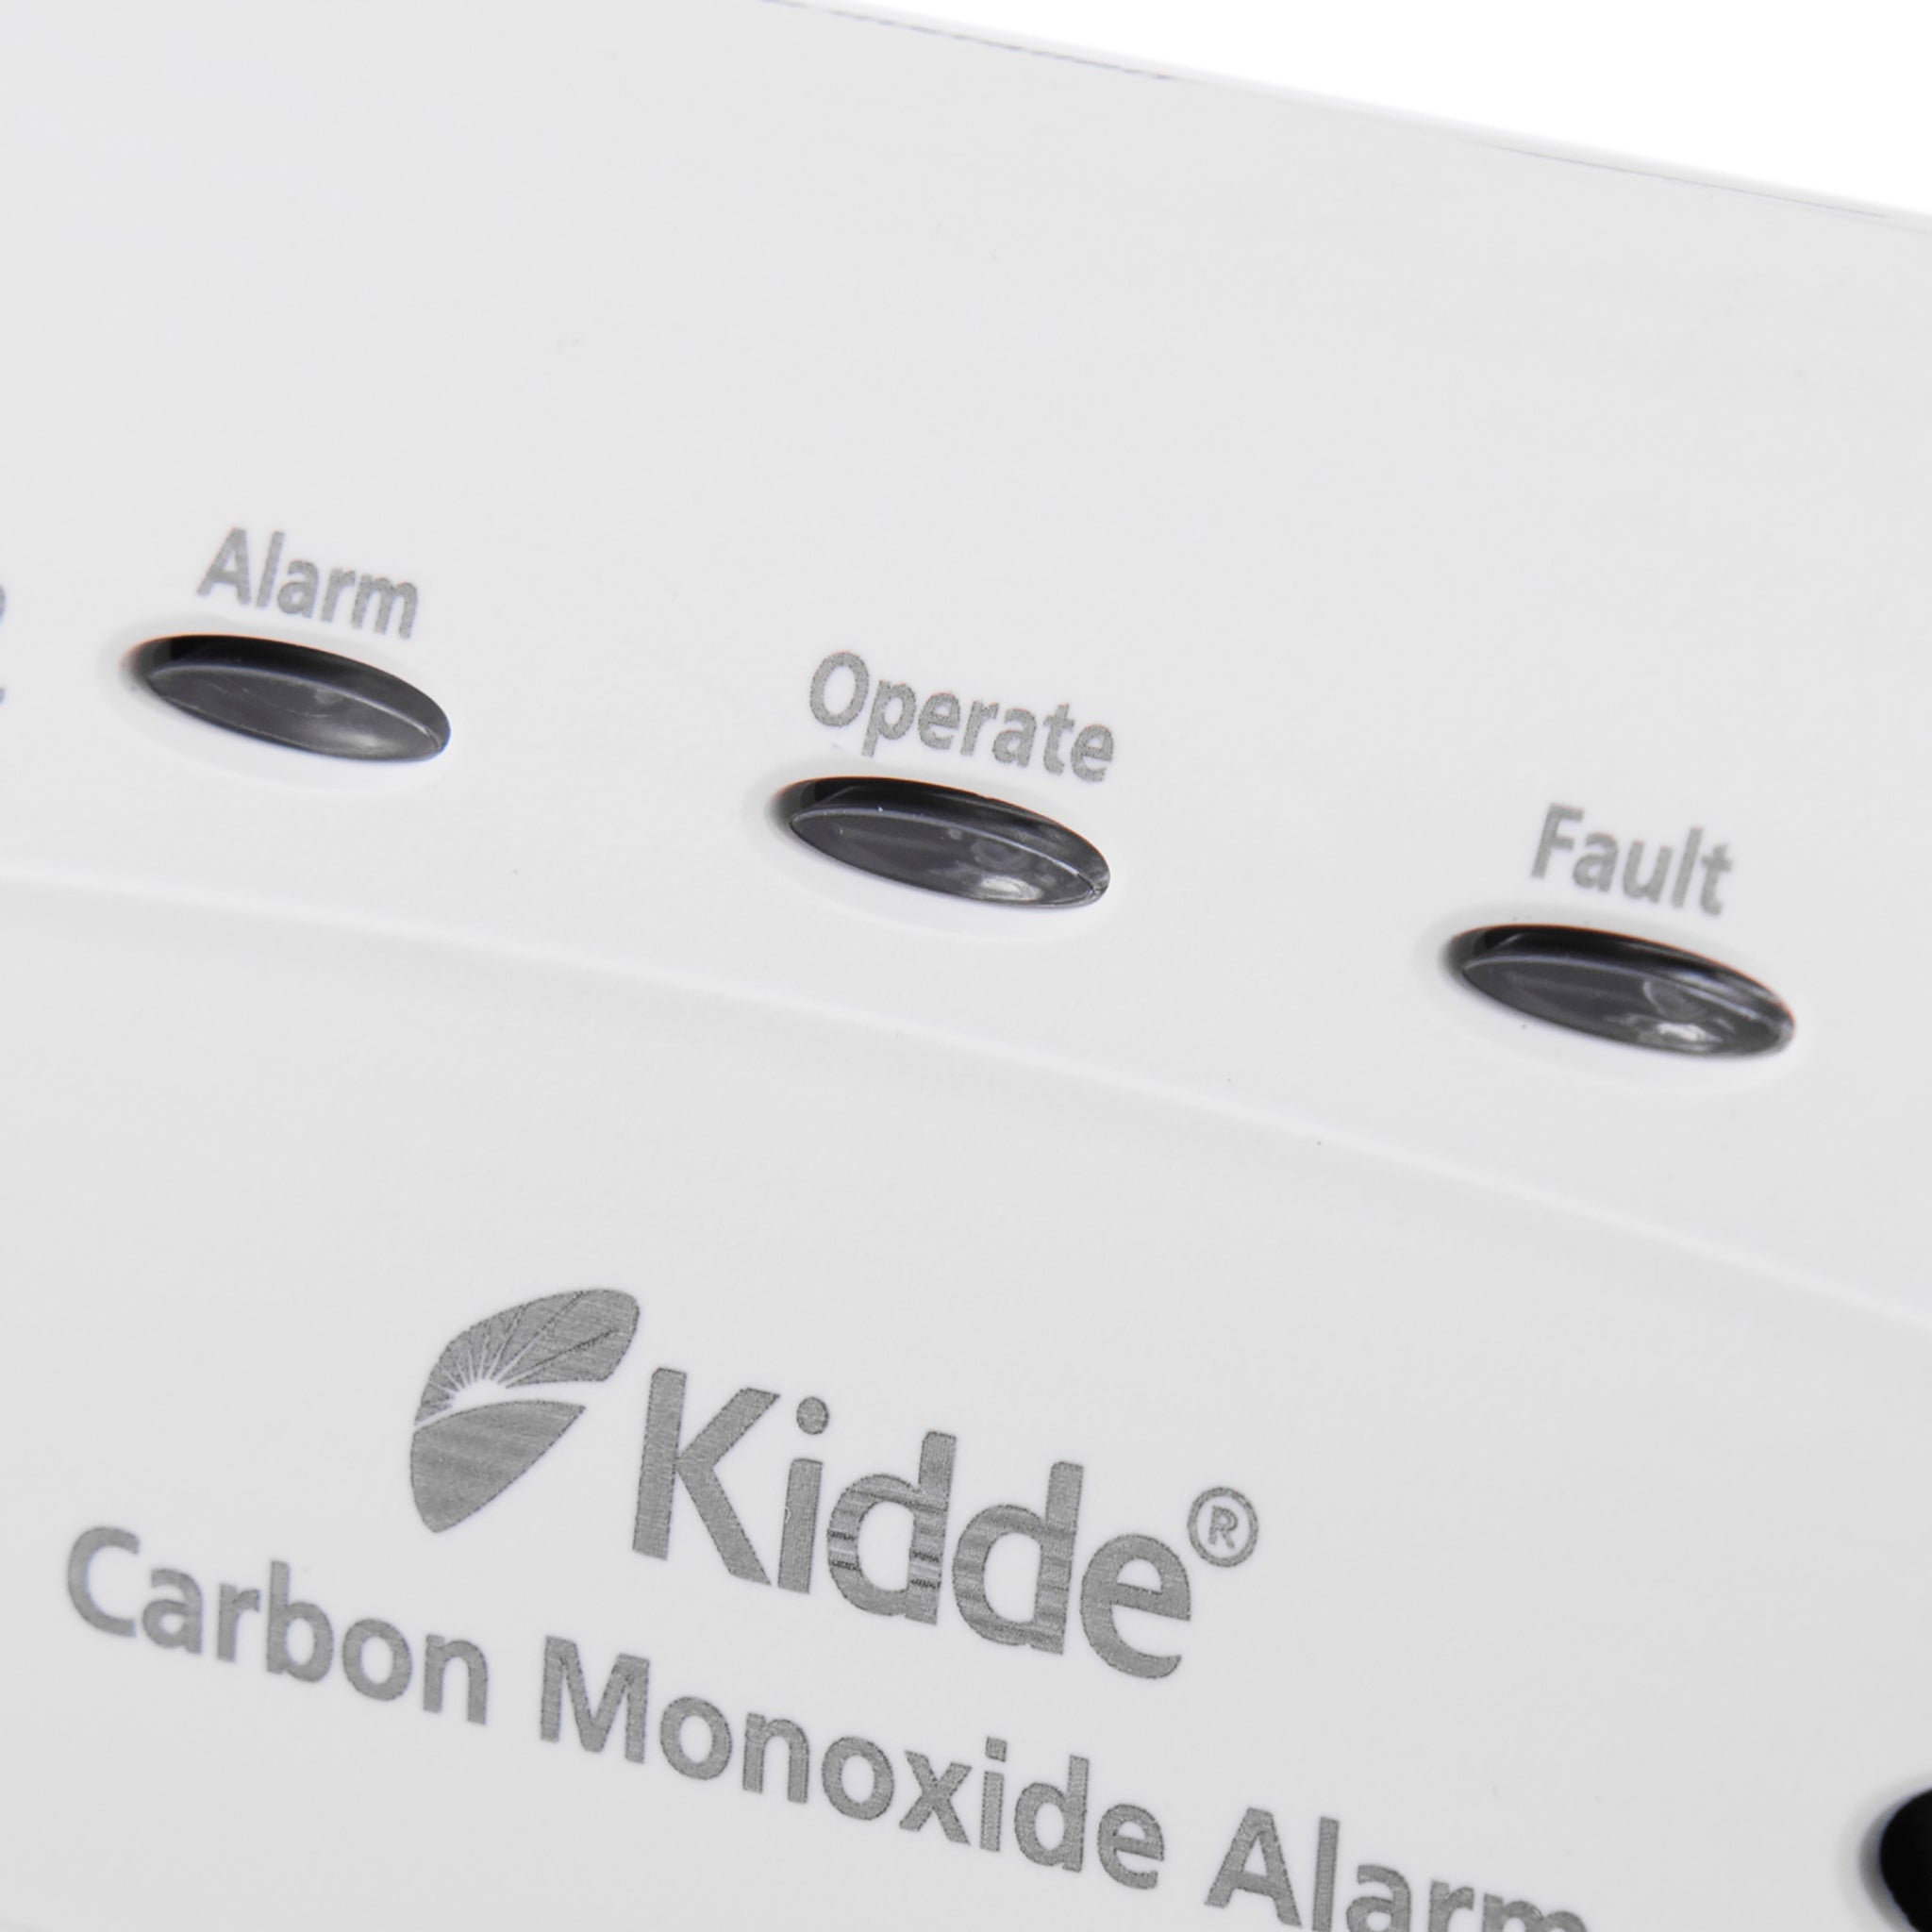 kidde reliable carbon monoxide alarm